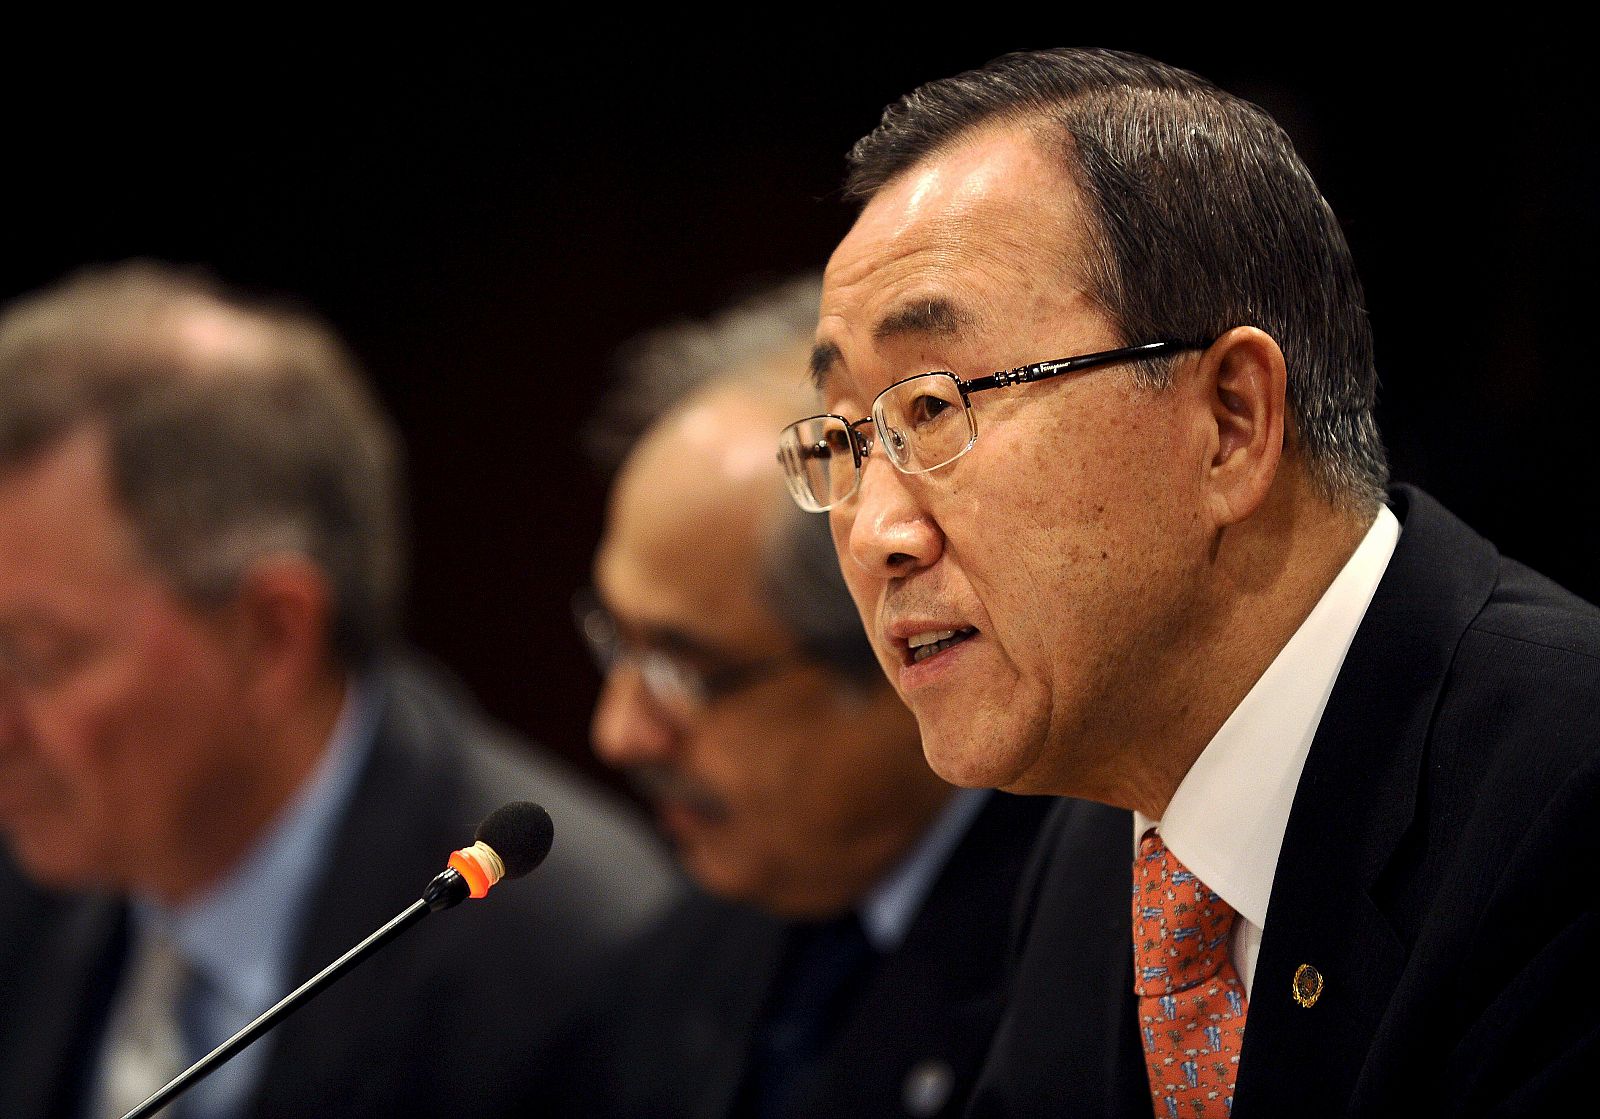 El Secretario General de Naciones Unidas, Ban Ki-moon, durante una reunión con líderes árabes en la sede de Naciones Unidas en Nueva York